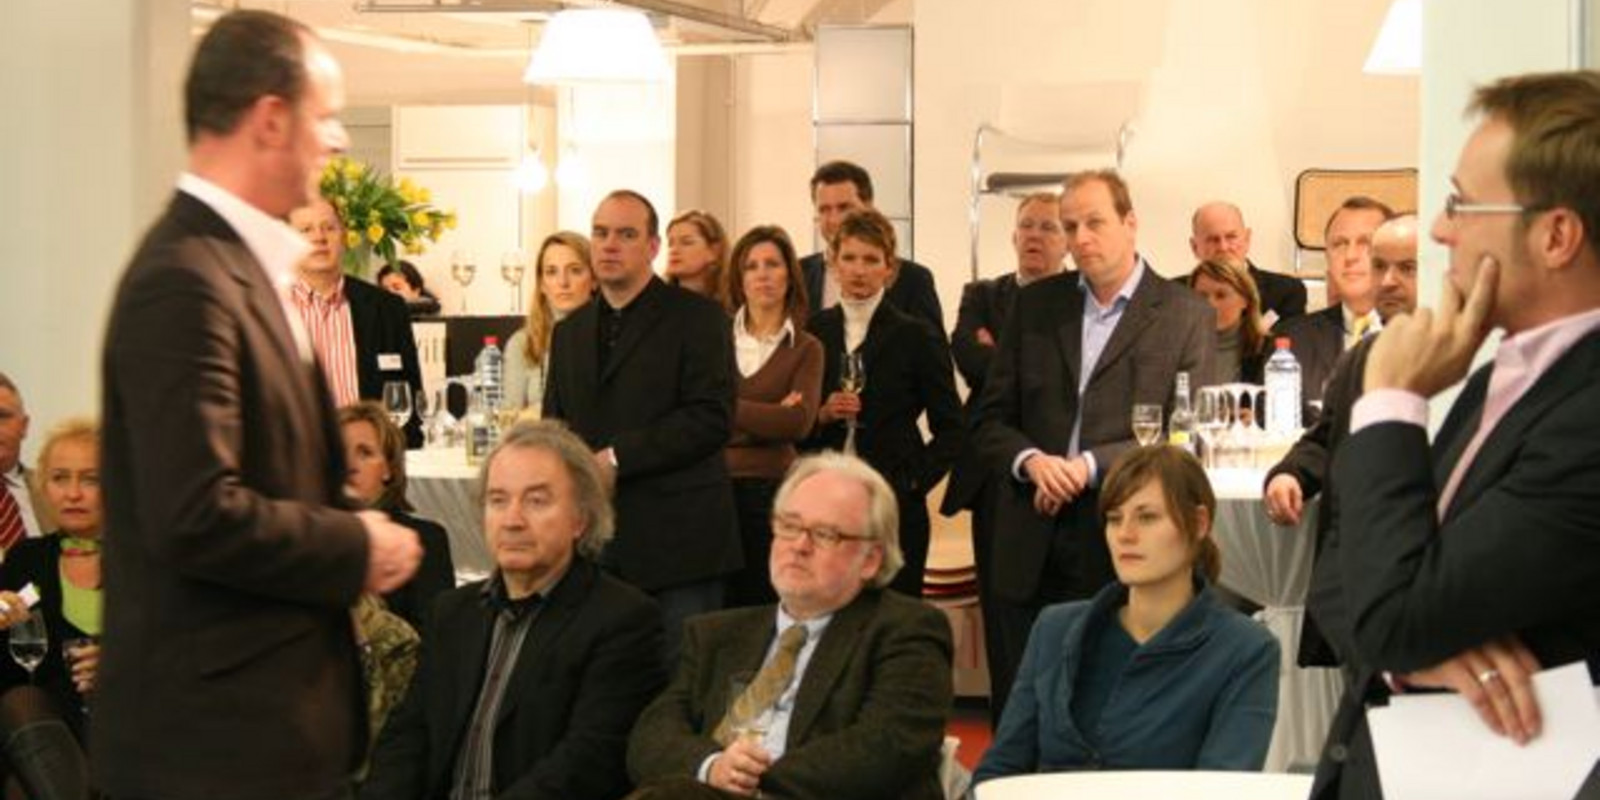 Ausstellungseröffnung "Wilkhahn Netzwerk" bei pro office Hannover Bild 14